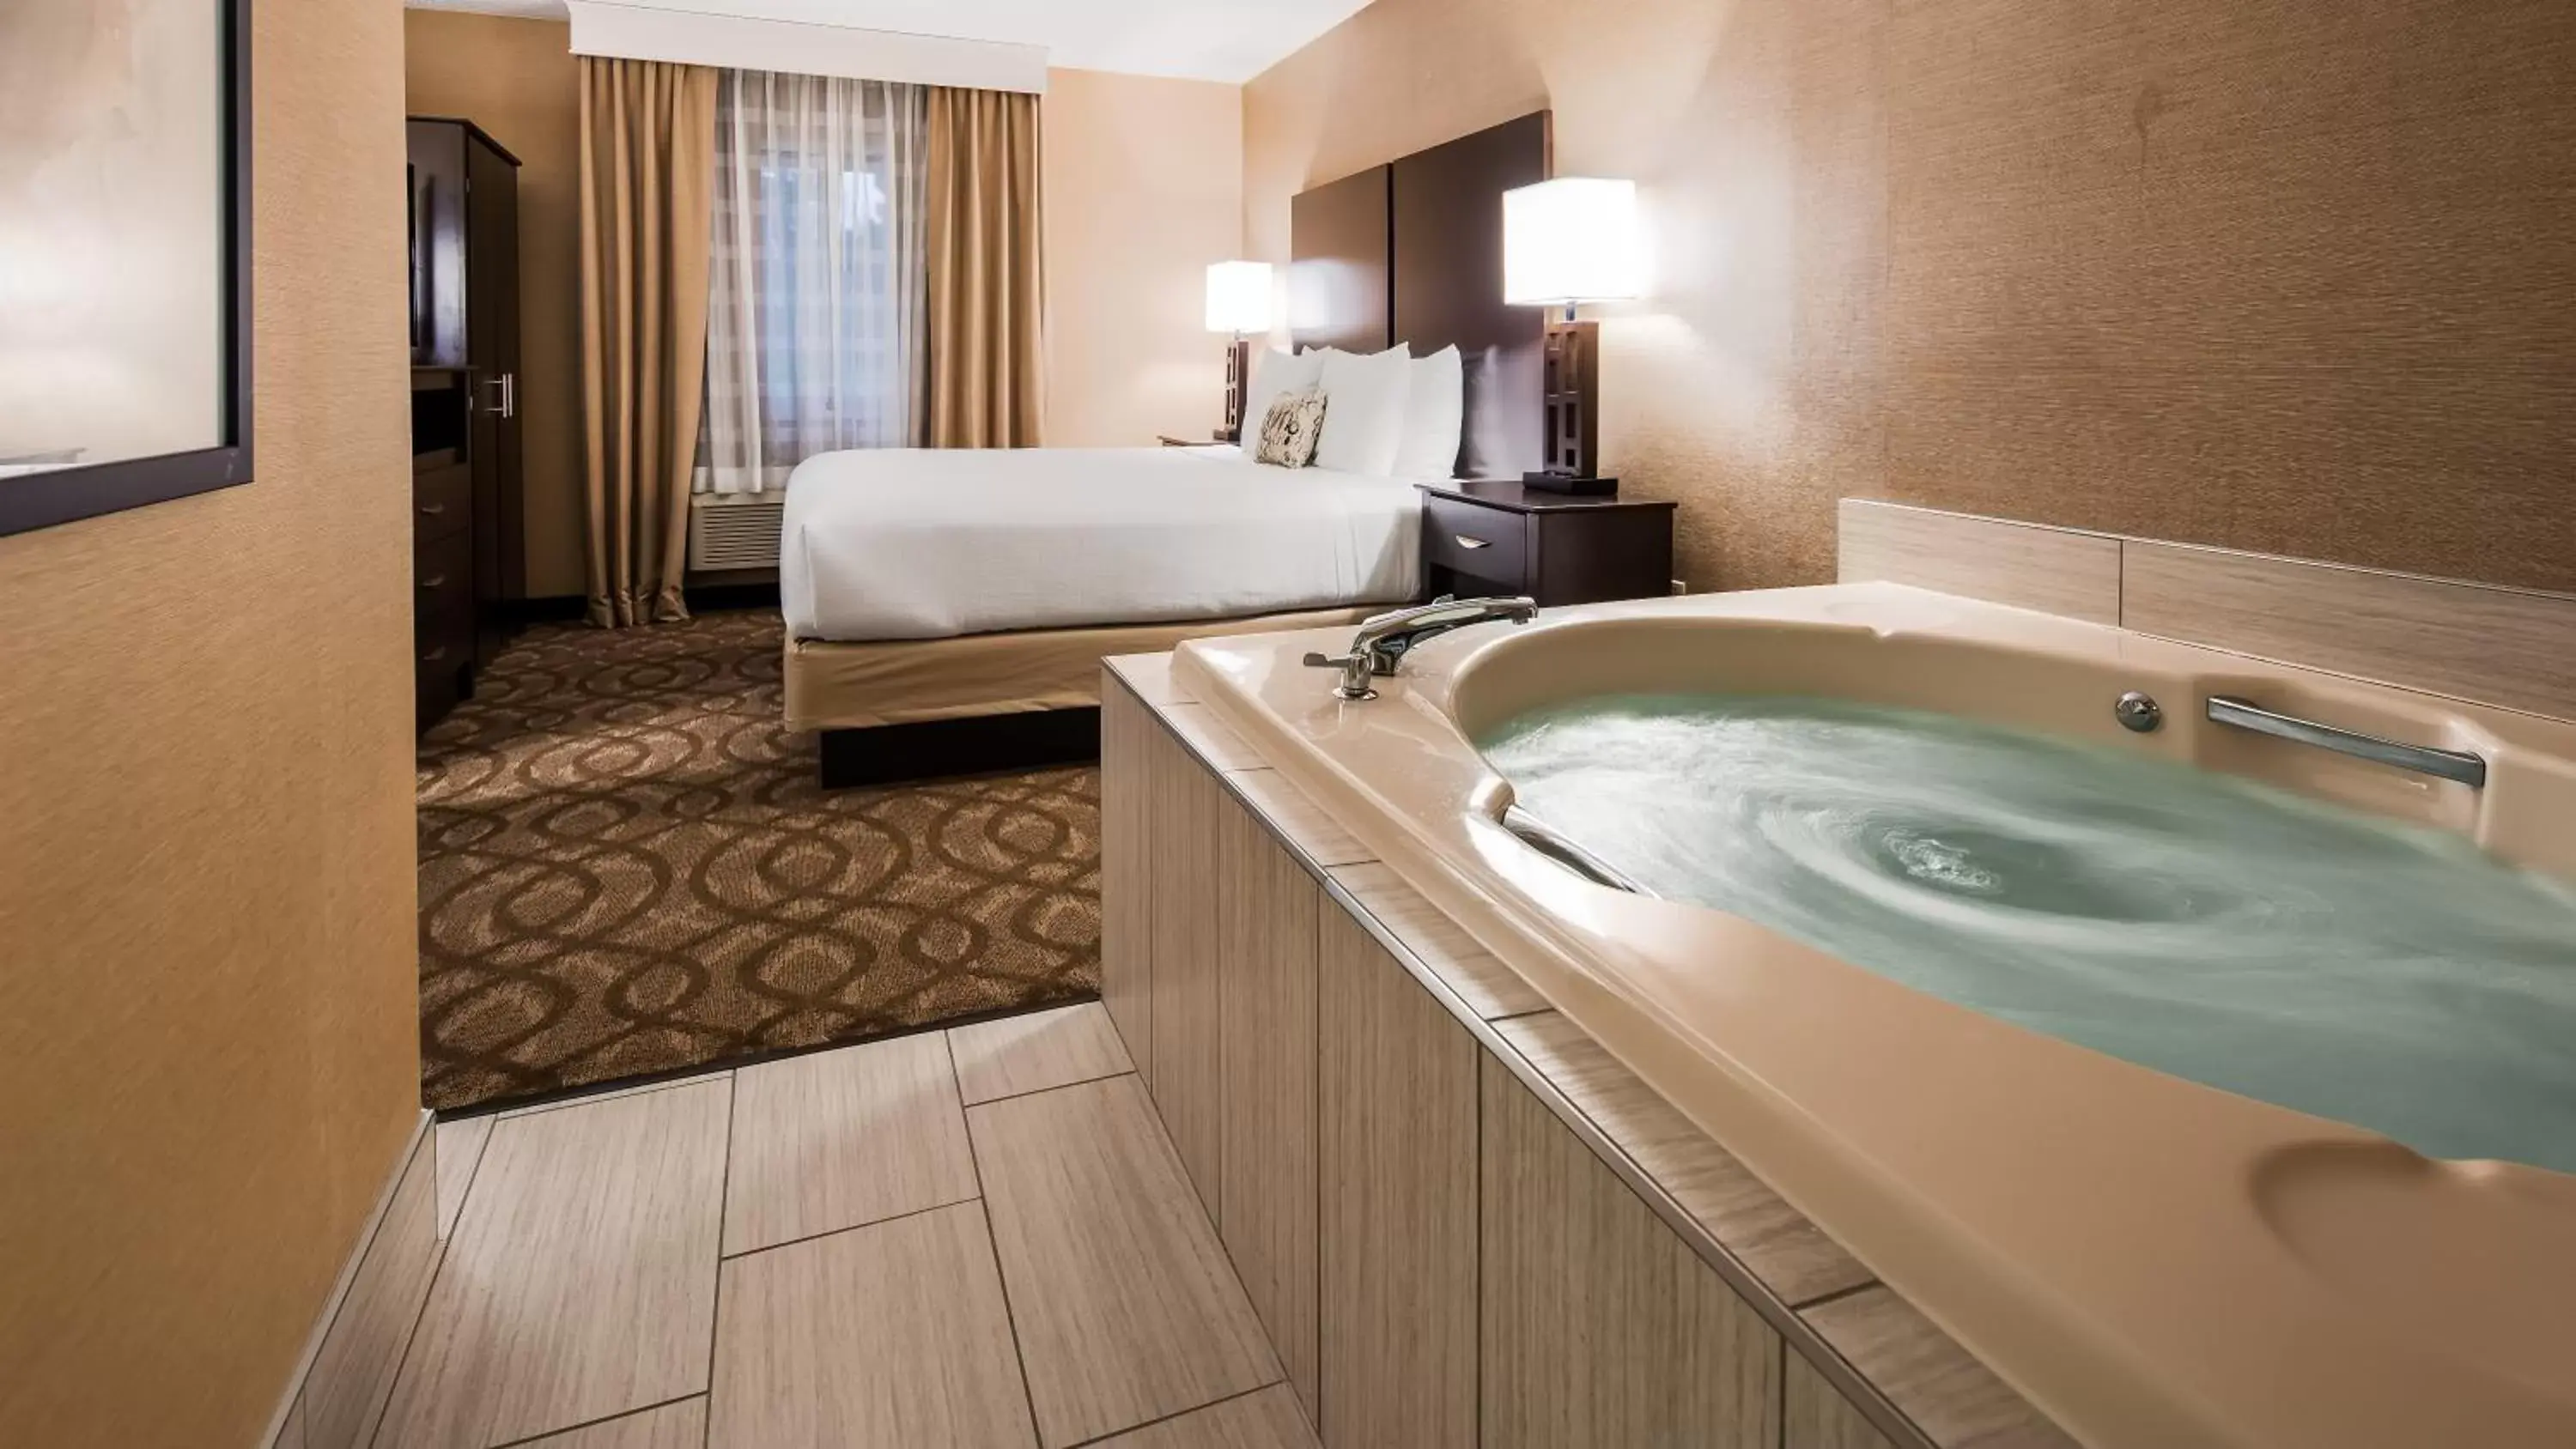 Bedroom, Bathroom in Best Western Okemos/East Lansing Hotel & Suites